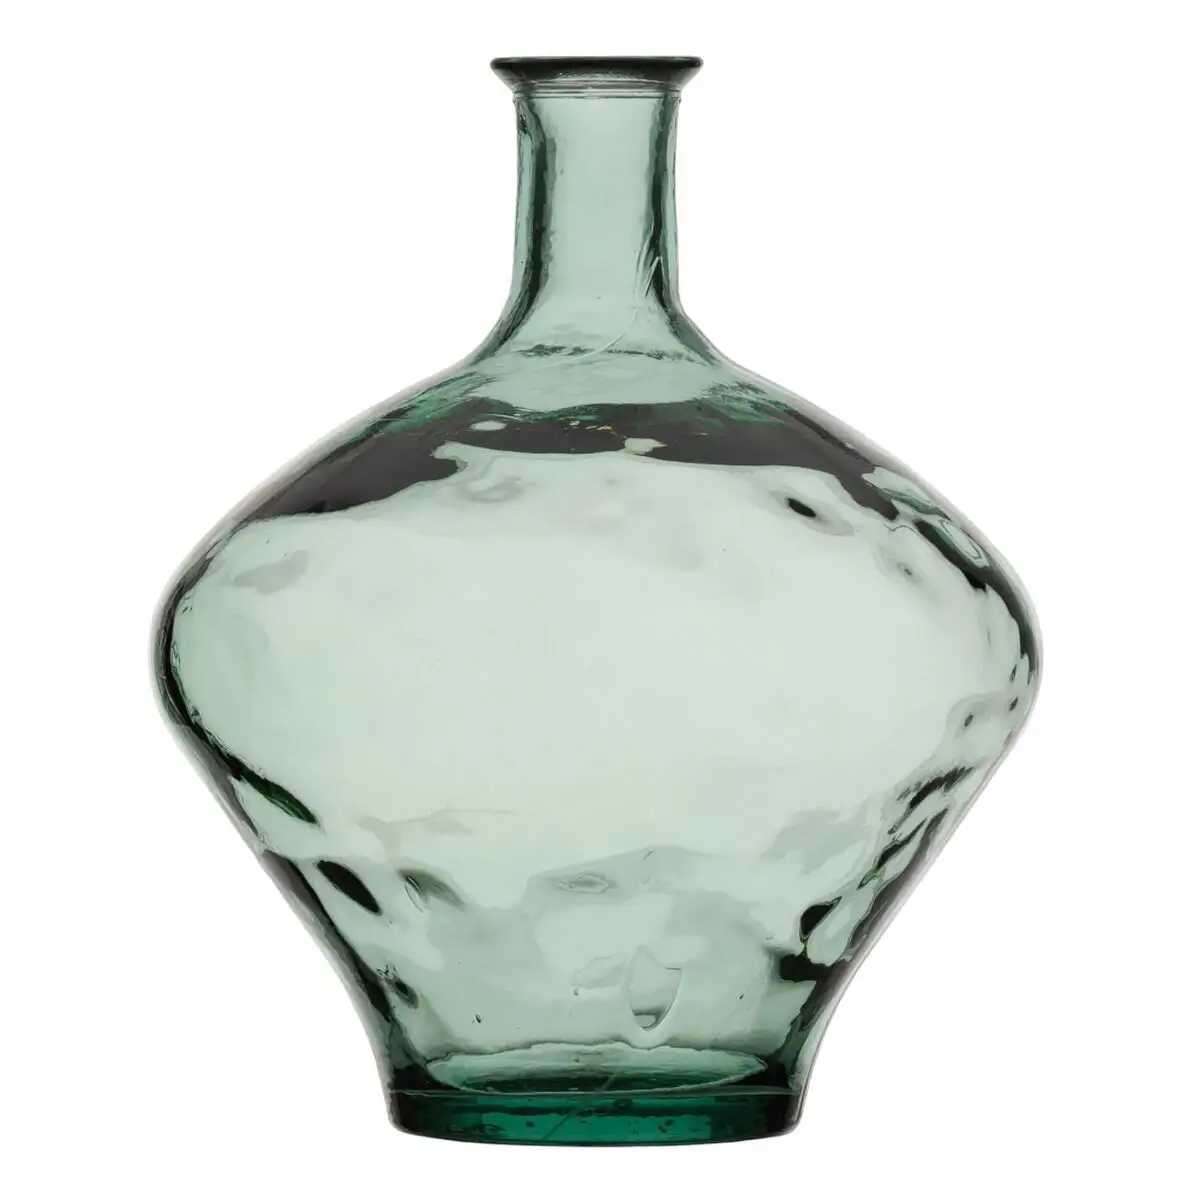 Vase 37 x 37 x 46 cm verre recycle vert_4844. Entrez dans l'Univers de DIAYTAR SENEGAL - Où le Shopping Devient une Découverte. Explorez nos rayons et dénichez des trésors qui illuminent votre quotidien.